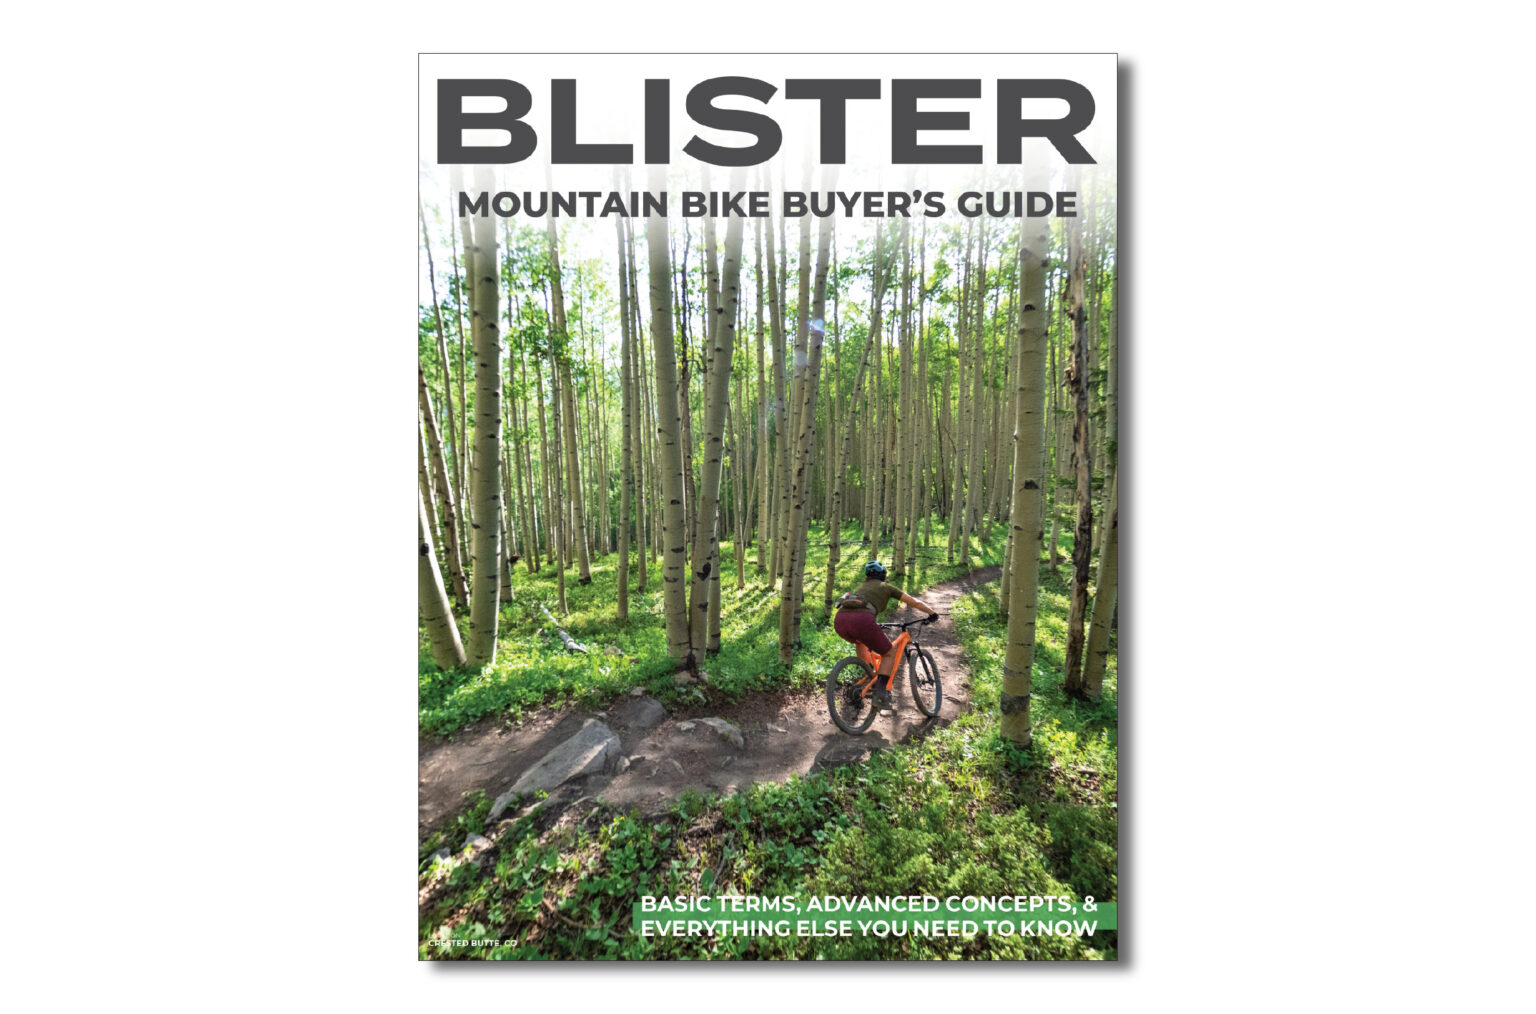 BLISTER Mountain Bike Buyer's Guide How to Buy a Mountain Bike